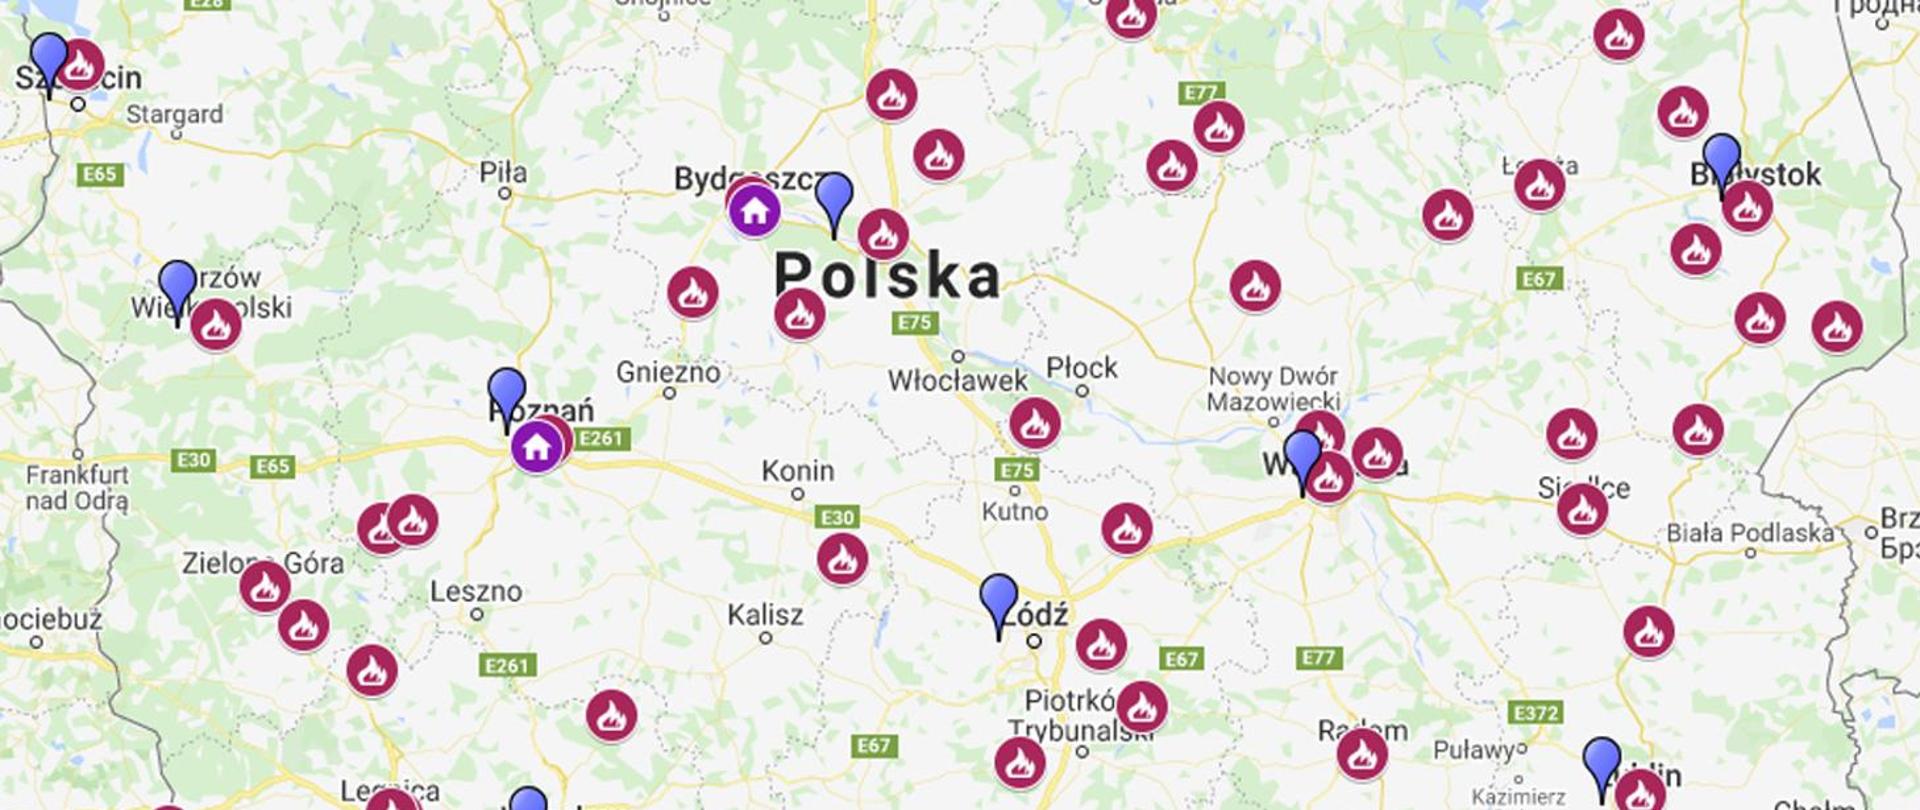 Mapa Polski z wykazem sal edukacyjnych